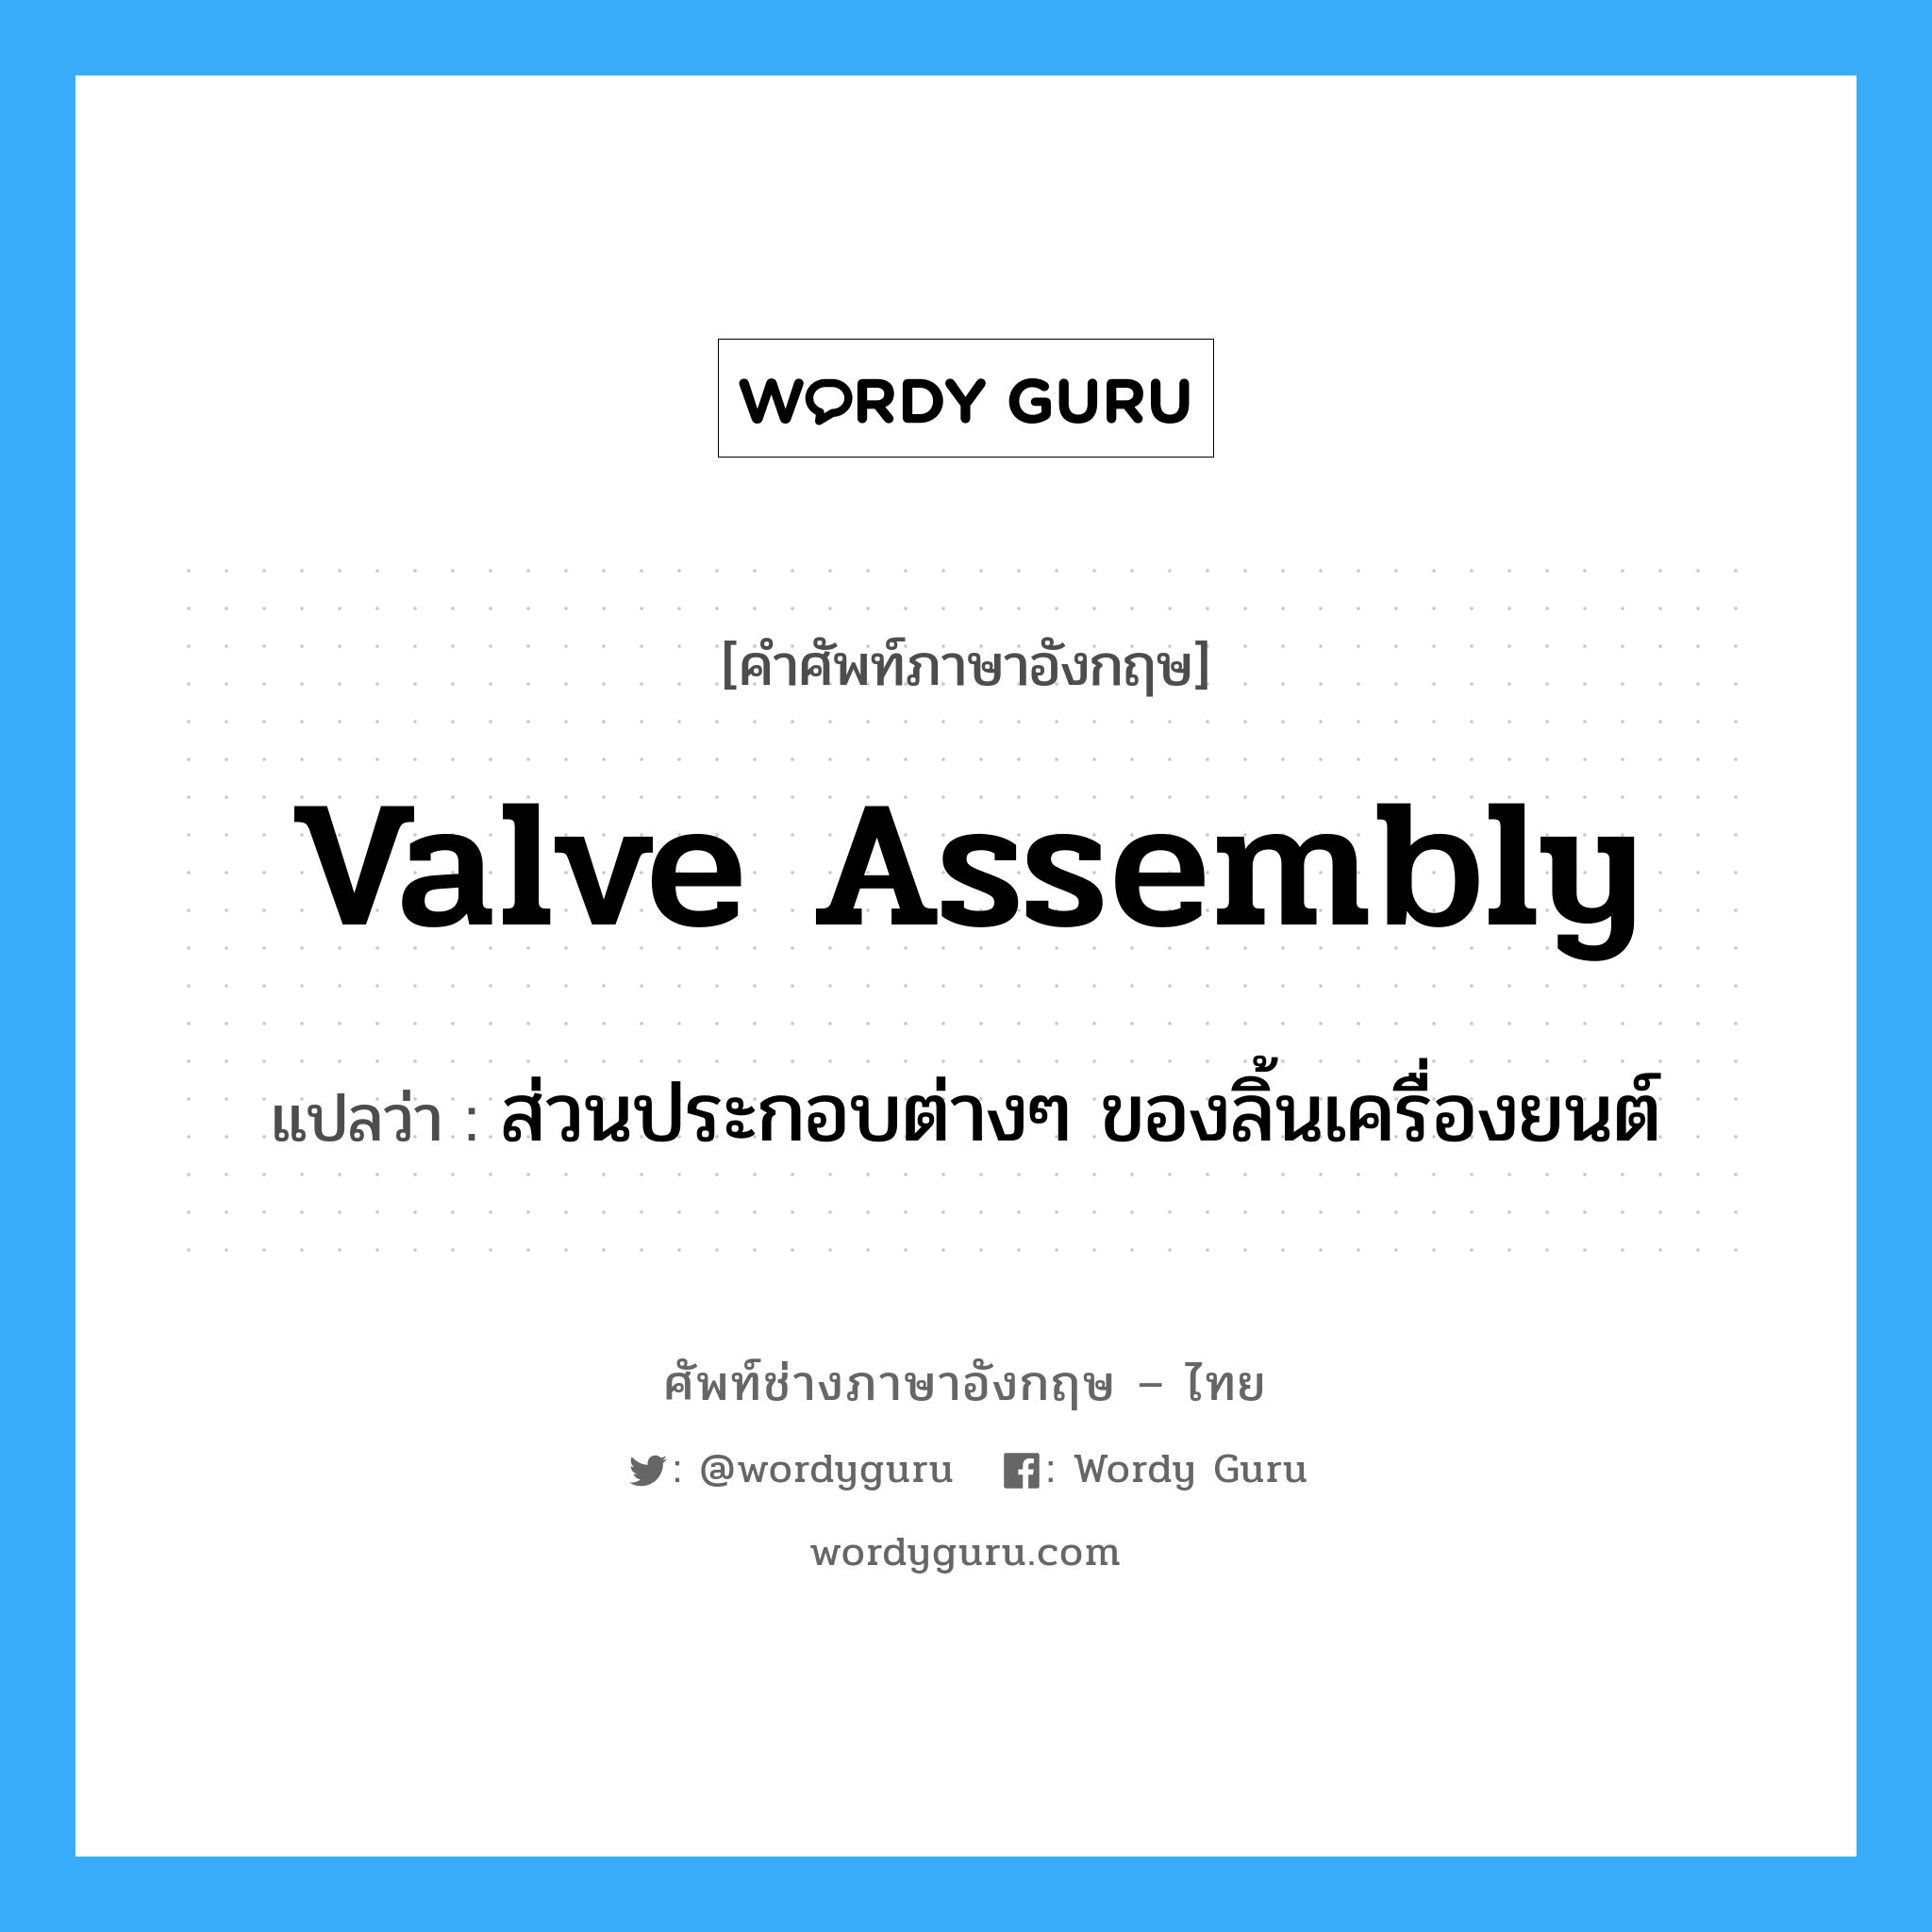 ส่วนประกอบต่างๆ ของลิ้นเครื่องยนต์ ภาษาอังกฤษ?, คำศัพท์ช่างภาษาอังกฤษ - ไทย ส่วนประกอบต่างๆ ของลิ้นเครื่องยนต์ คำศัพท์ภาษาอังกฤษ ส่วนประกอบต่างๆ ของลิ้นเครื่องยนต์ แปลว่า valve assembly